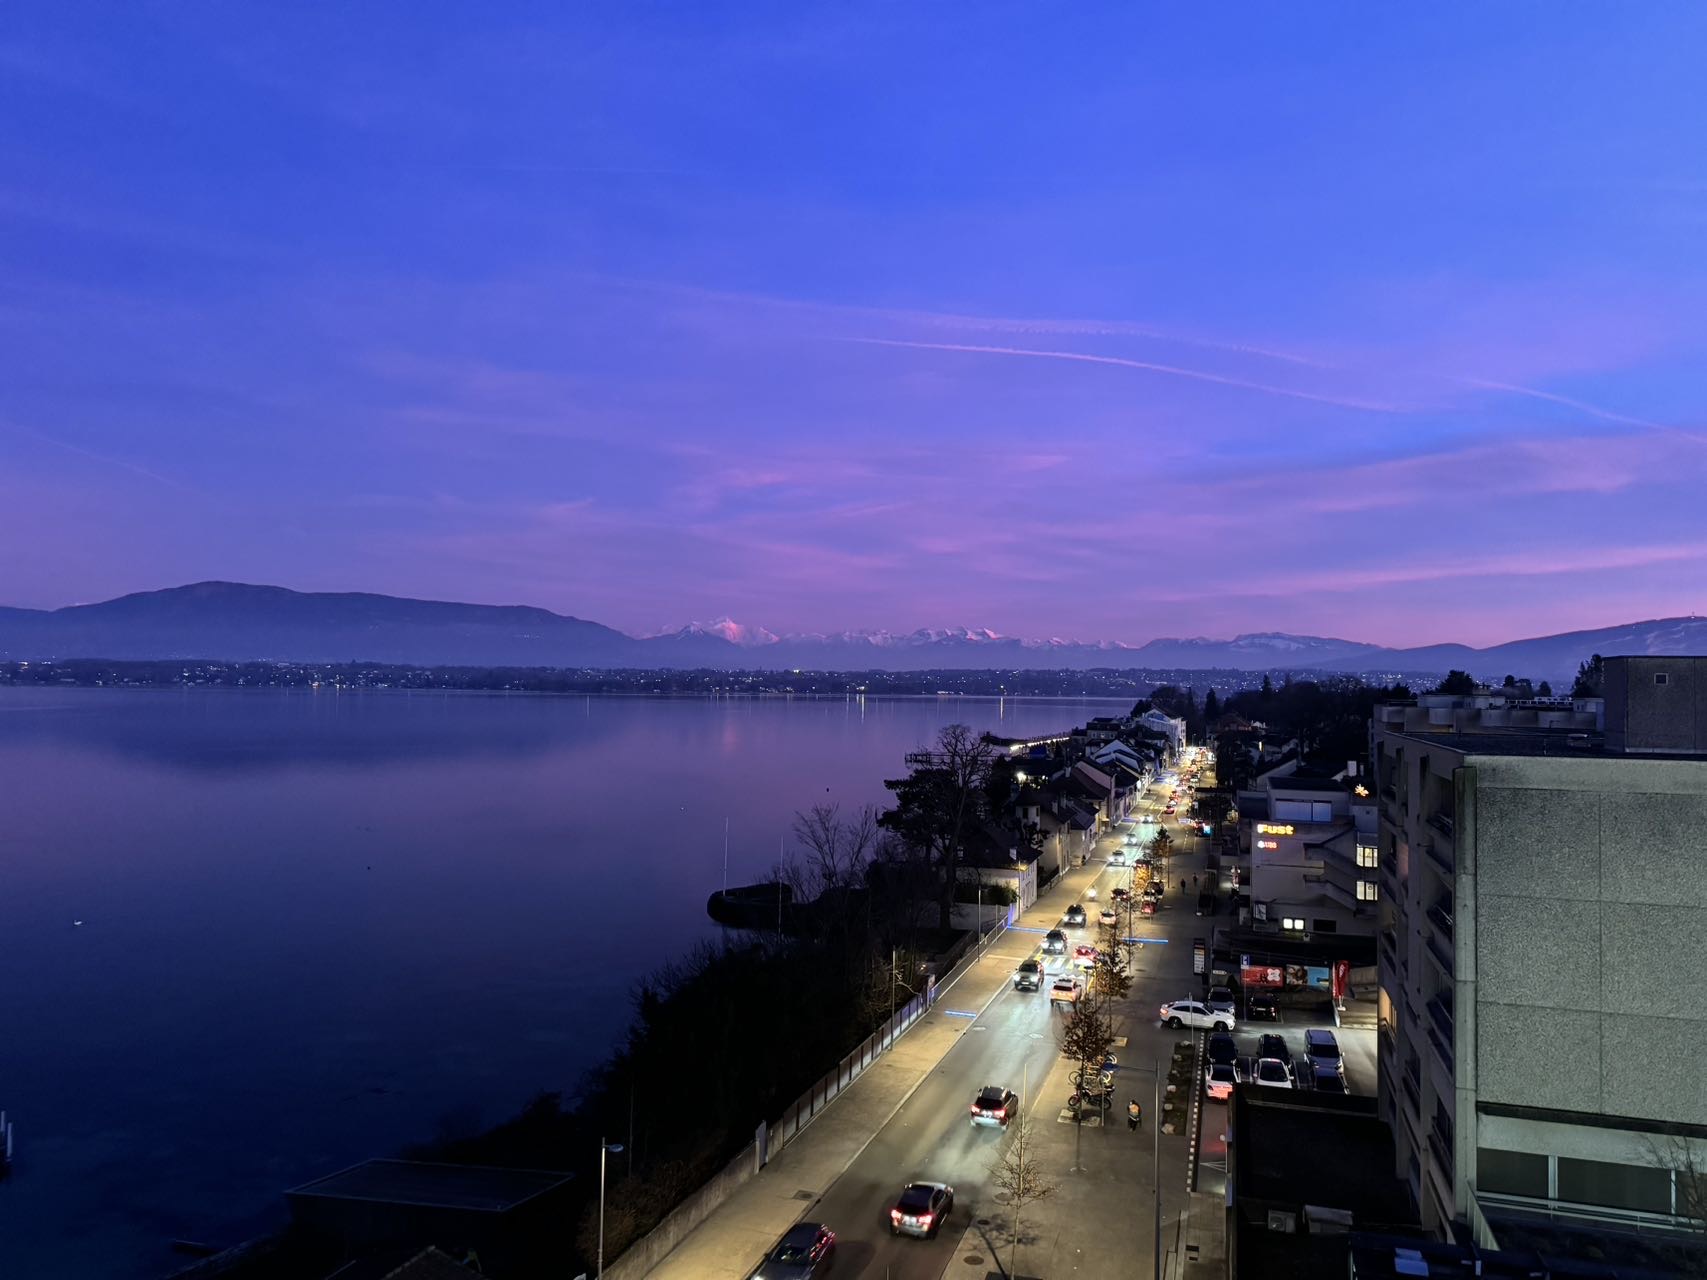 酒店窗外风景特别美，躺着看日内瓦湖的日落日出。交通超级方便，酒店后面几十米就是火车站，坐火车可以到日